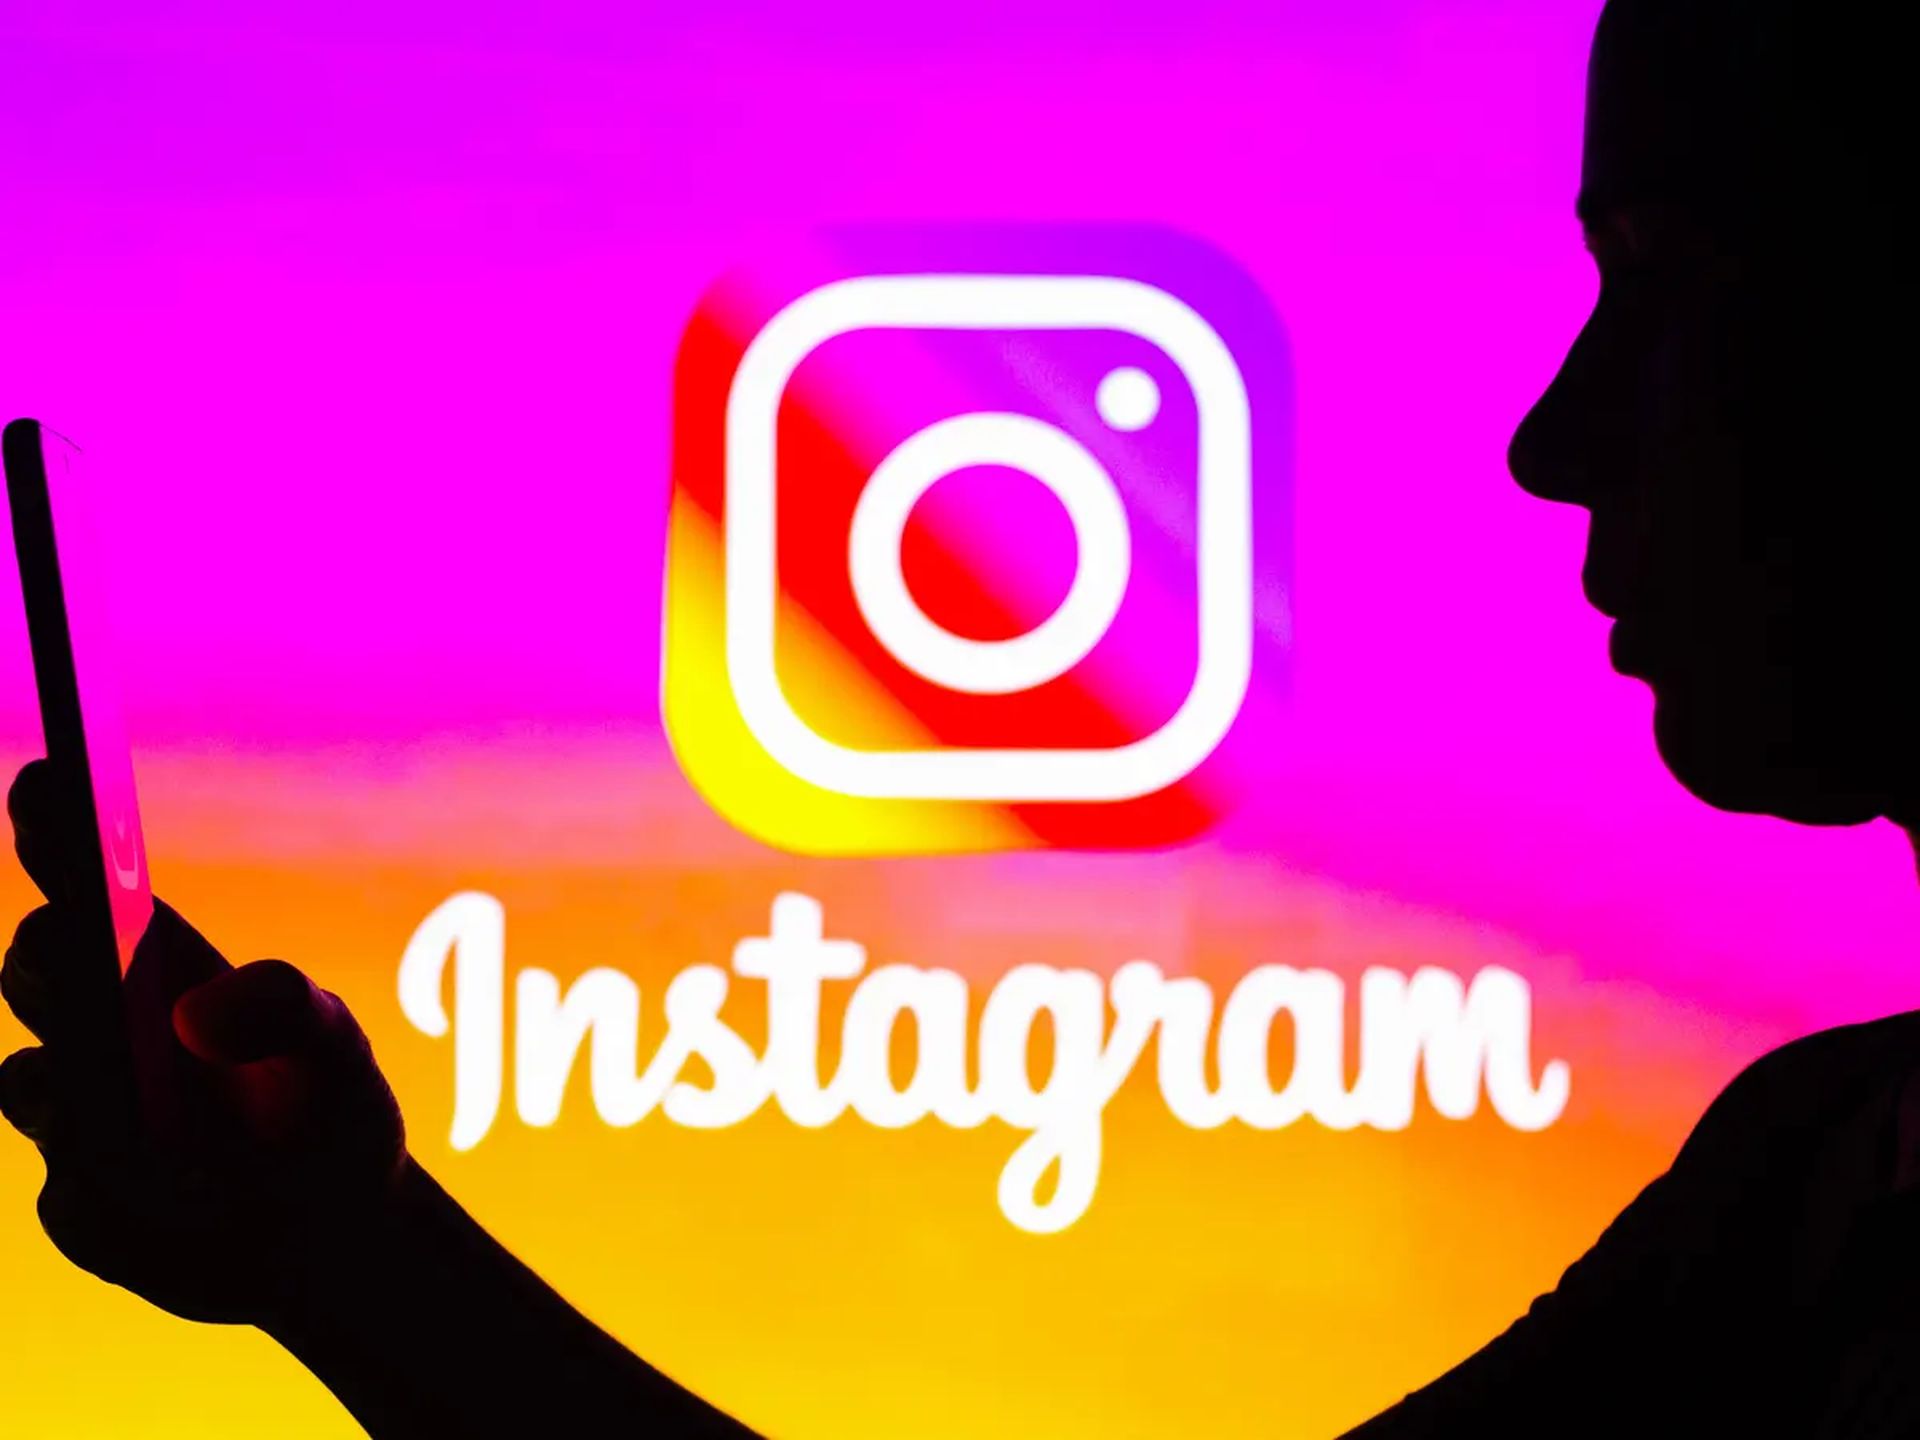 In dit artikel gaan we bespreken hoe je kunt repareren dat de Instagram-camera niet werkt, zodat je de populaire app voor sociale media kunt gebruiken wanneer je maar wilt.